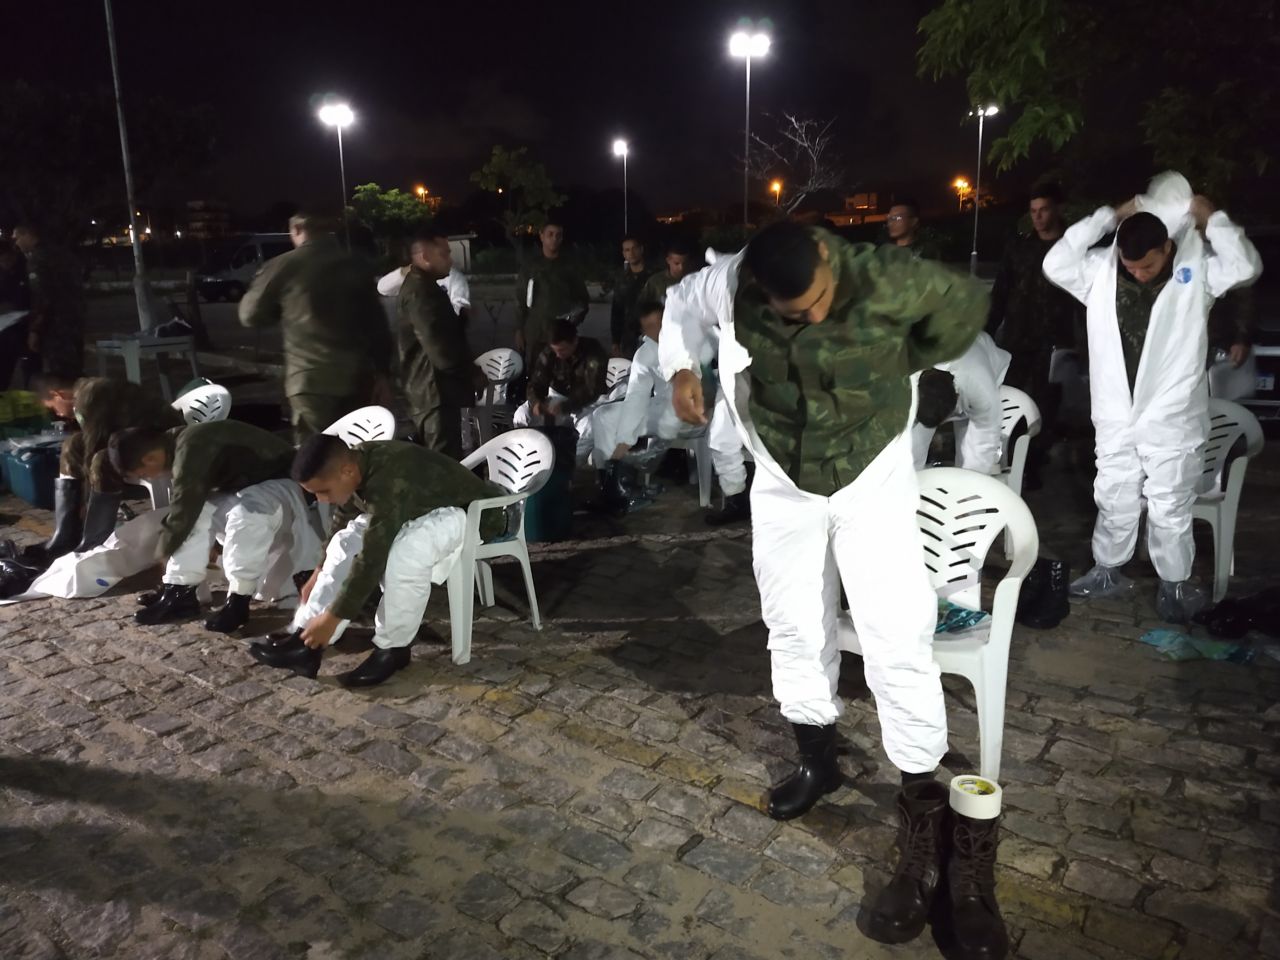 Exército Brasileiro em operação de higienização em Rodoviária de Natal(RN)